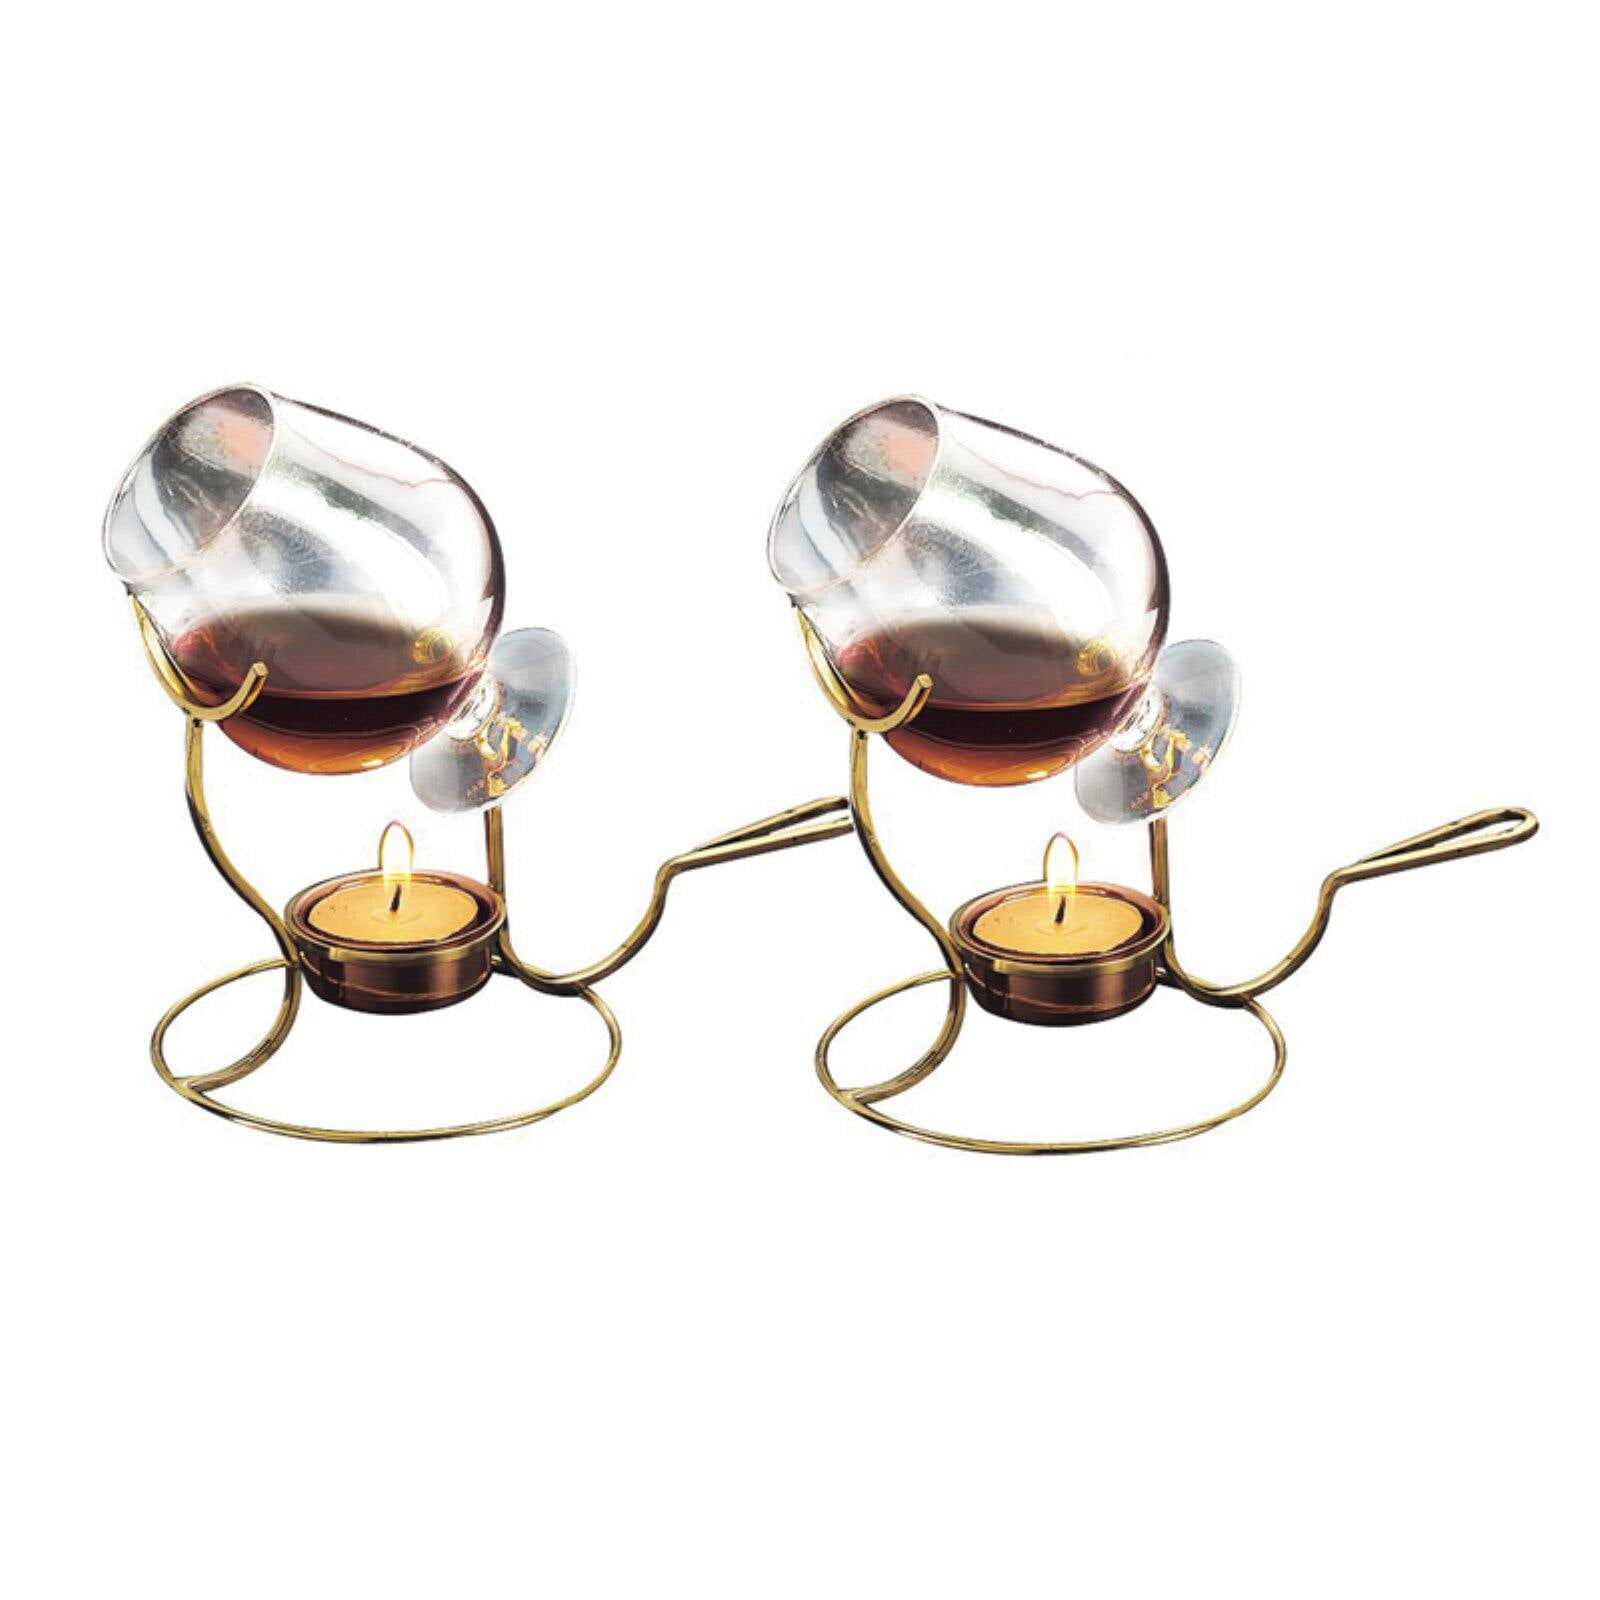 Brandy Cognac Bourbon Glass Warmer Tea Light Gentlemen Snifter Copper 2 Pack 